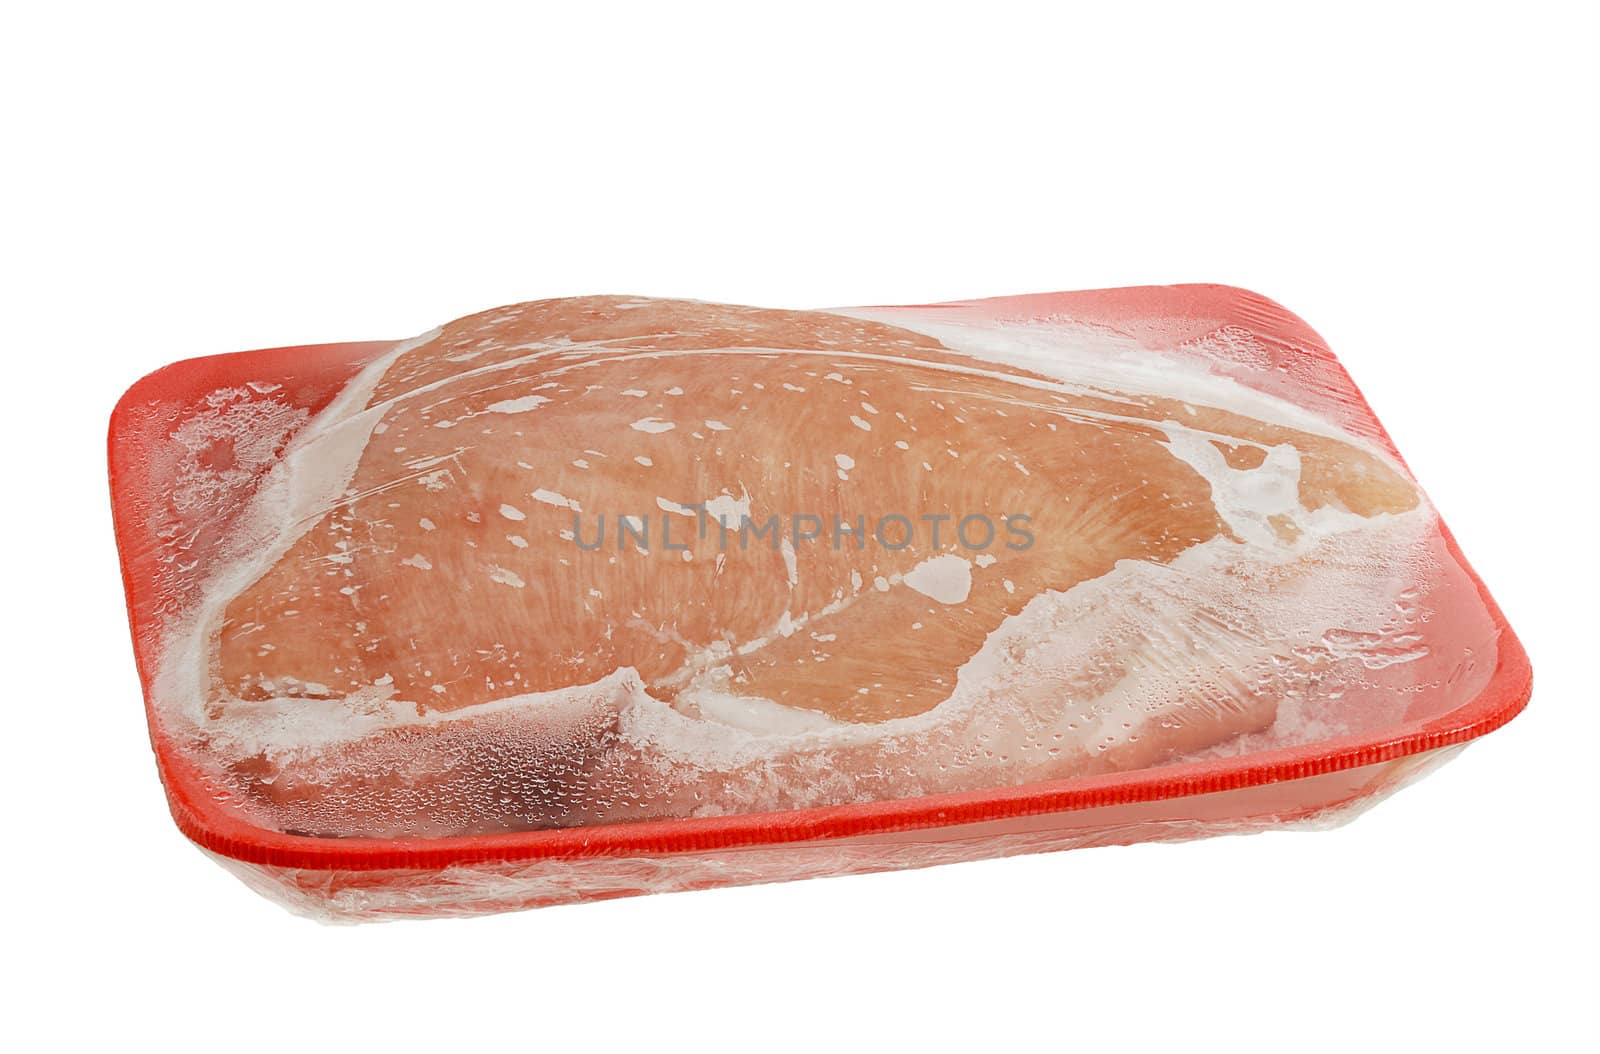 Frozen raw turkey breast on foam meat tray by vadidak